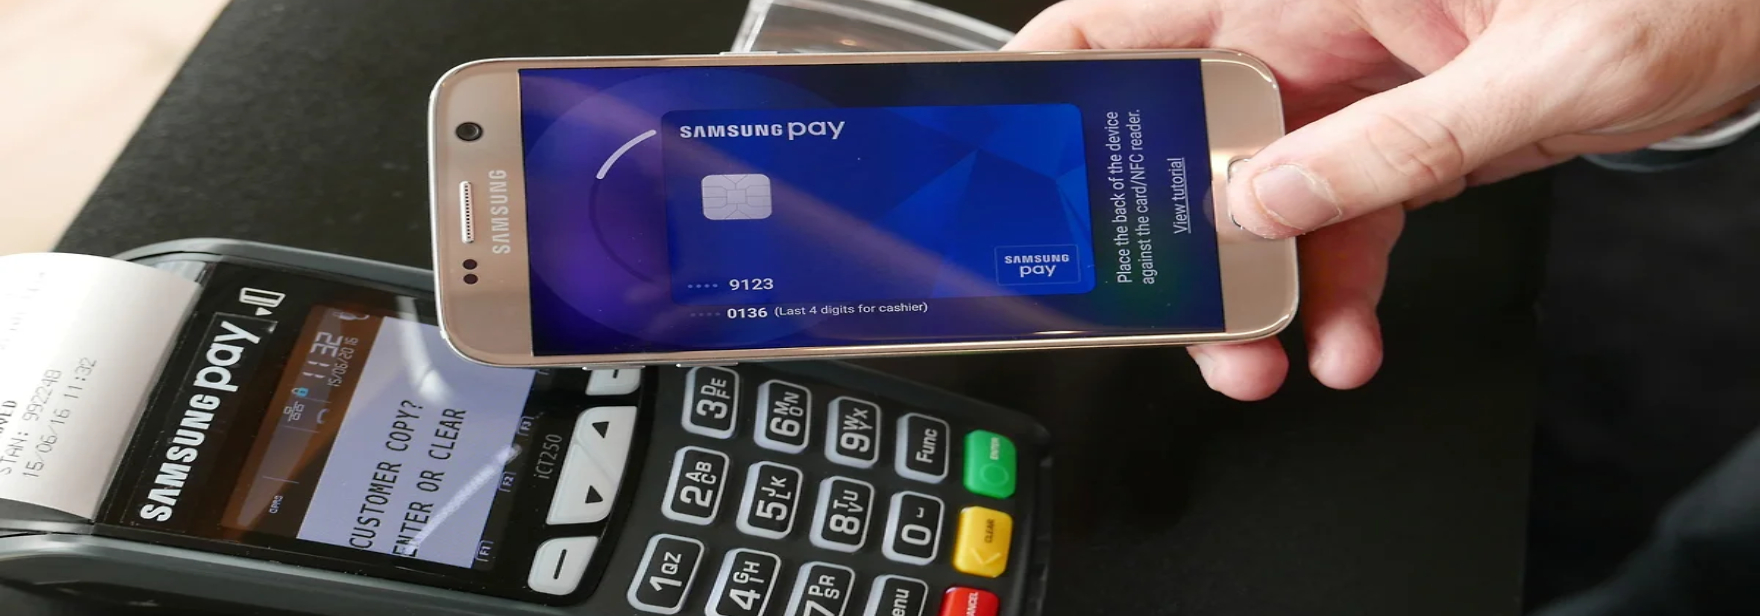 Samsung Pay хотят запретить в России. Apple Pay и Google Pay тоже под угрозой